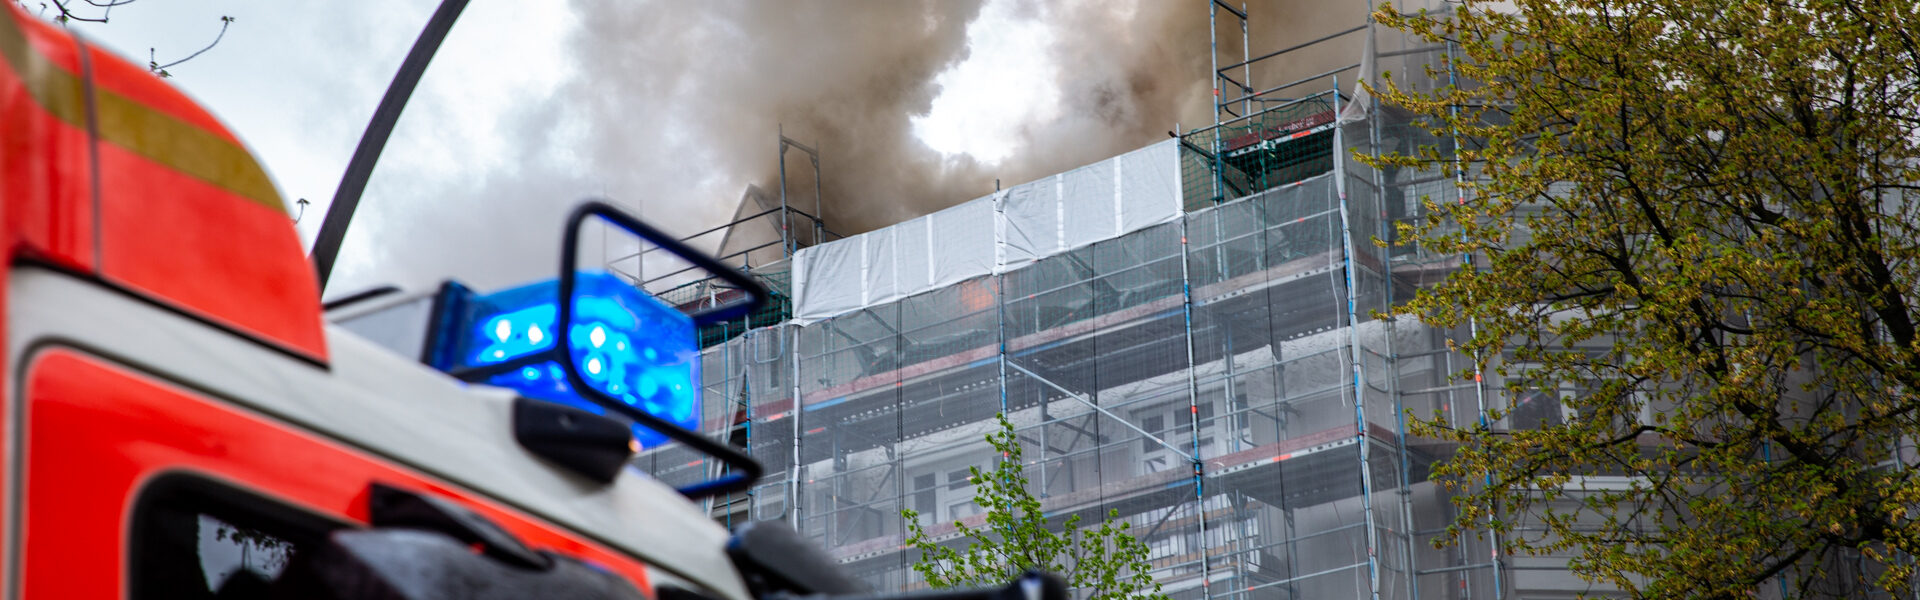 12.05.2021 – Dachstuhlbrand in Eimsbüttel